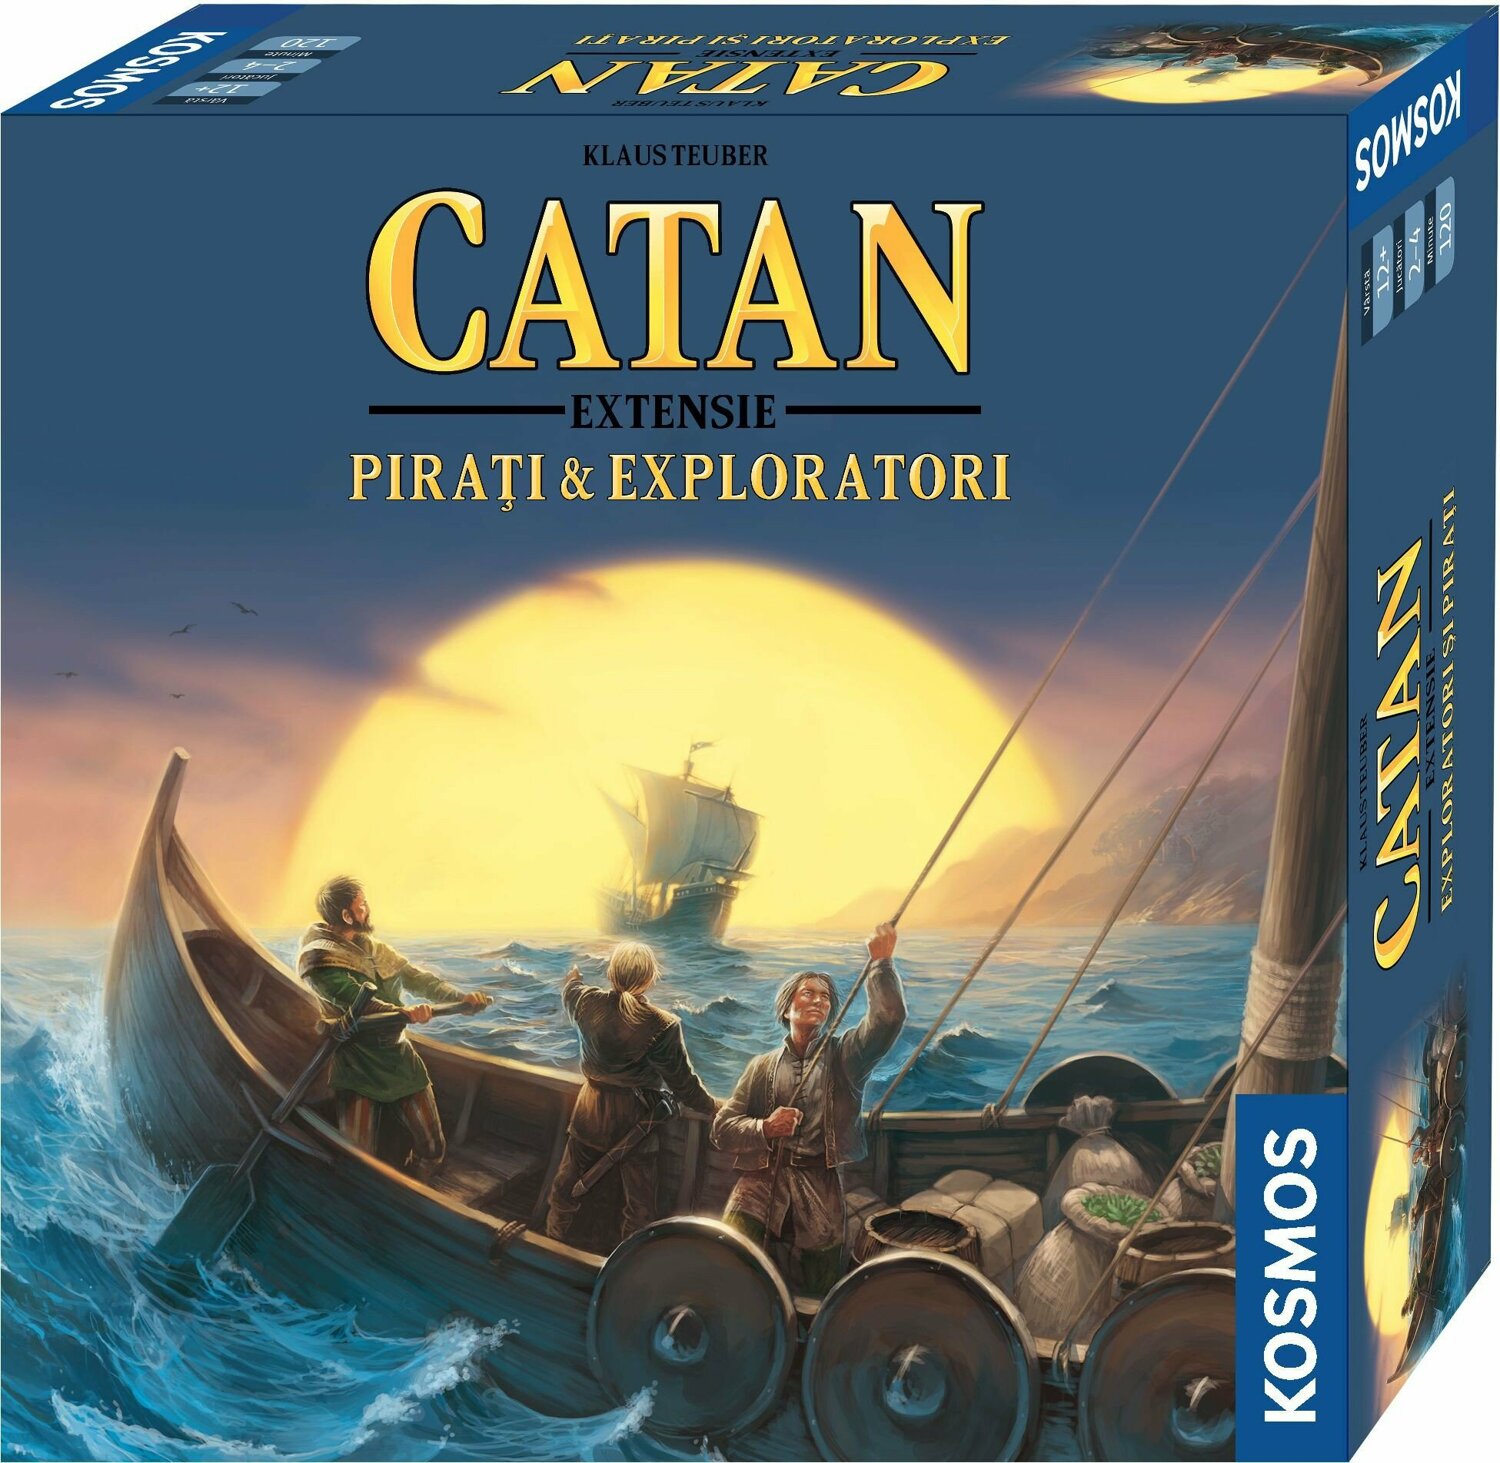 Catan - extensie Pirati & Exploratori, reducere mare